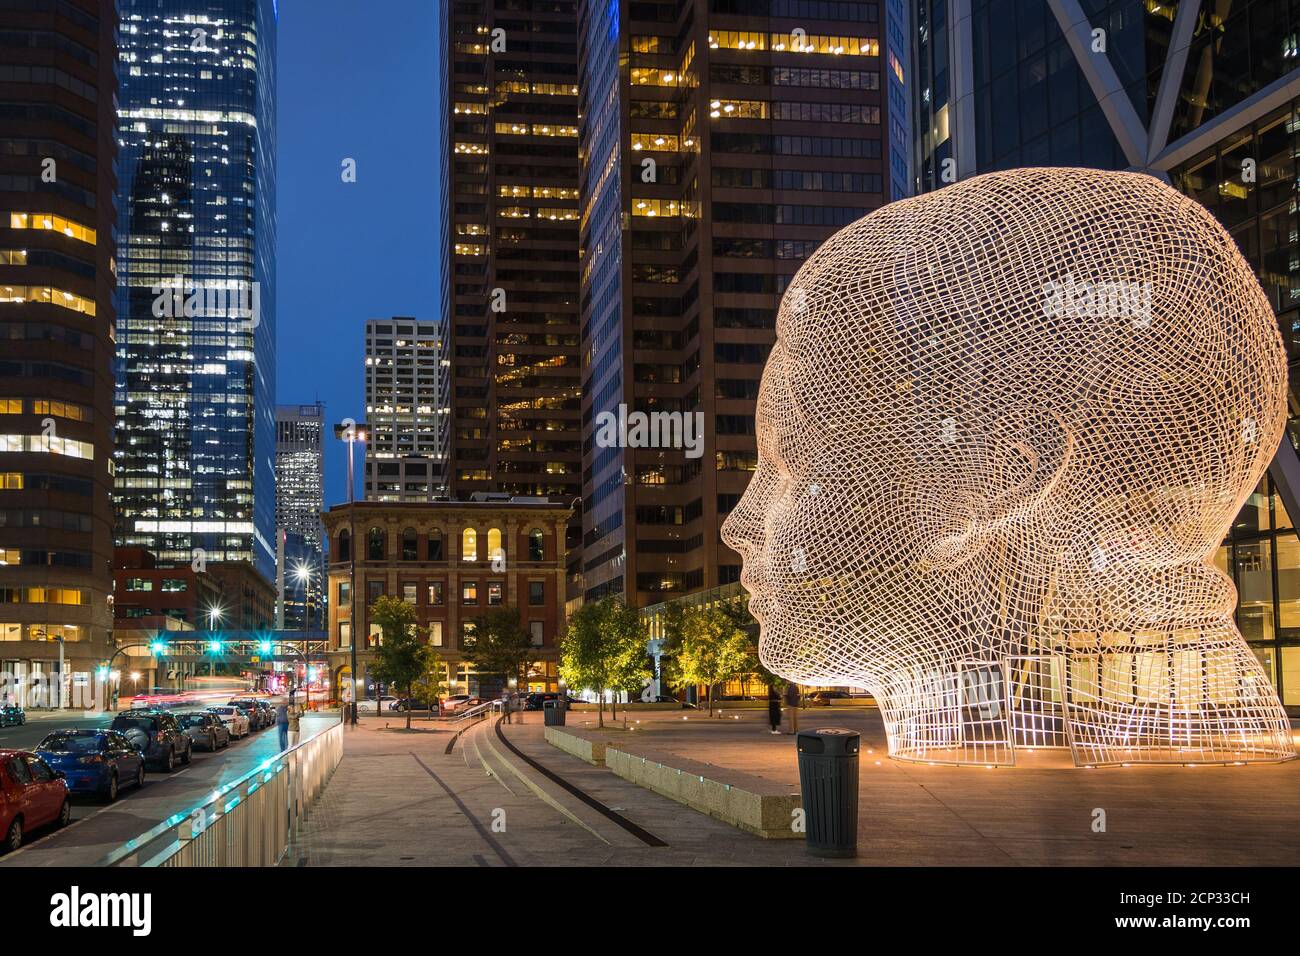 Beliebte Wahrzeichen Wunderland Skulptur von berühmten spanischen Künstler und Bildhauer Jaume Plensa in der Abenddämmerung in der Innenstadt von Calgary, Alberta, Kanada. Stockfoto